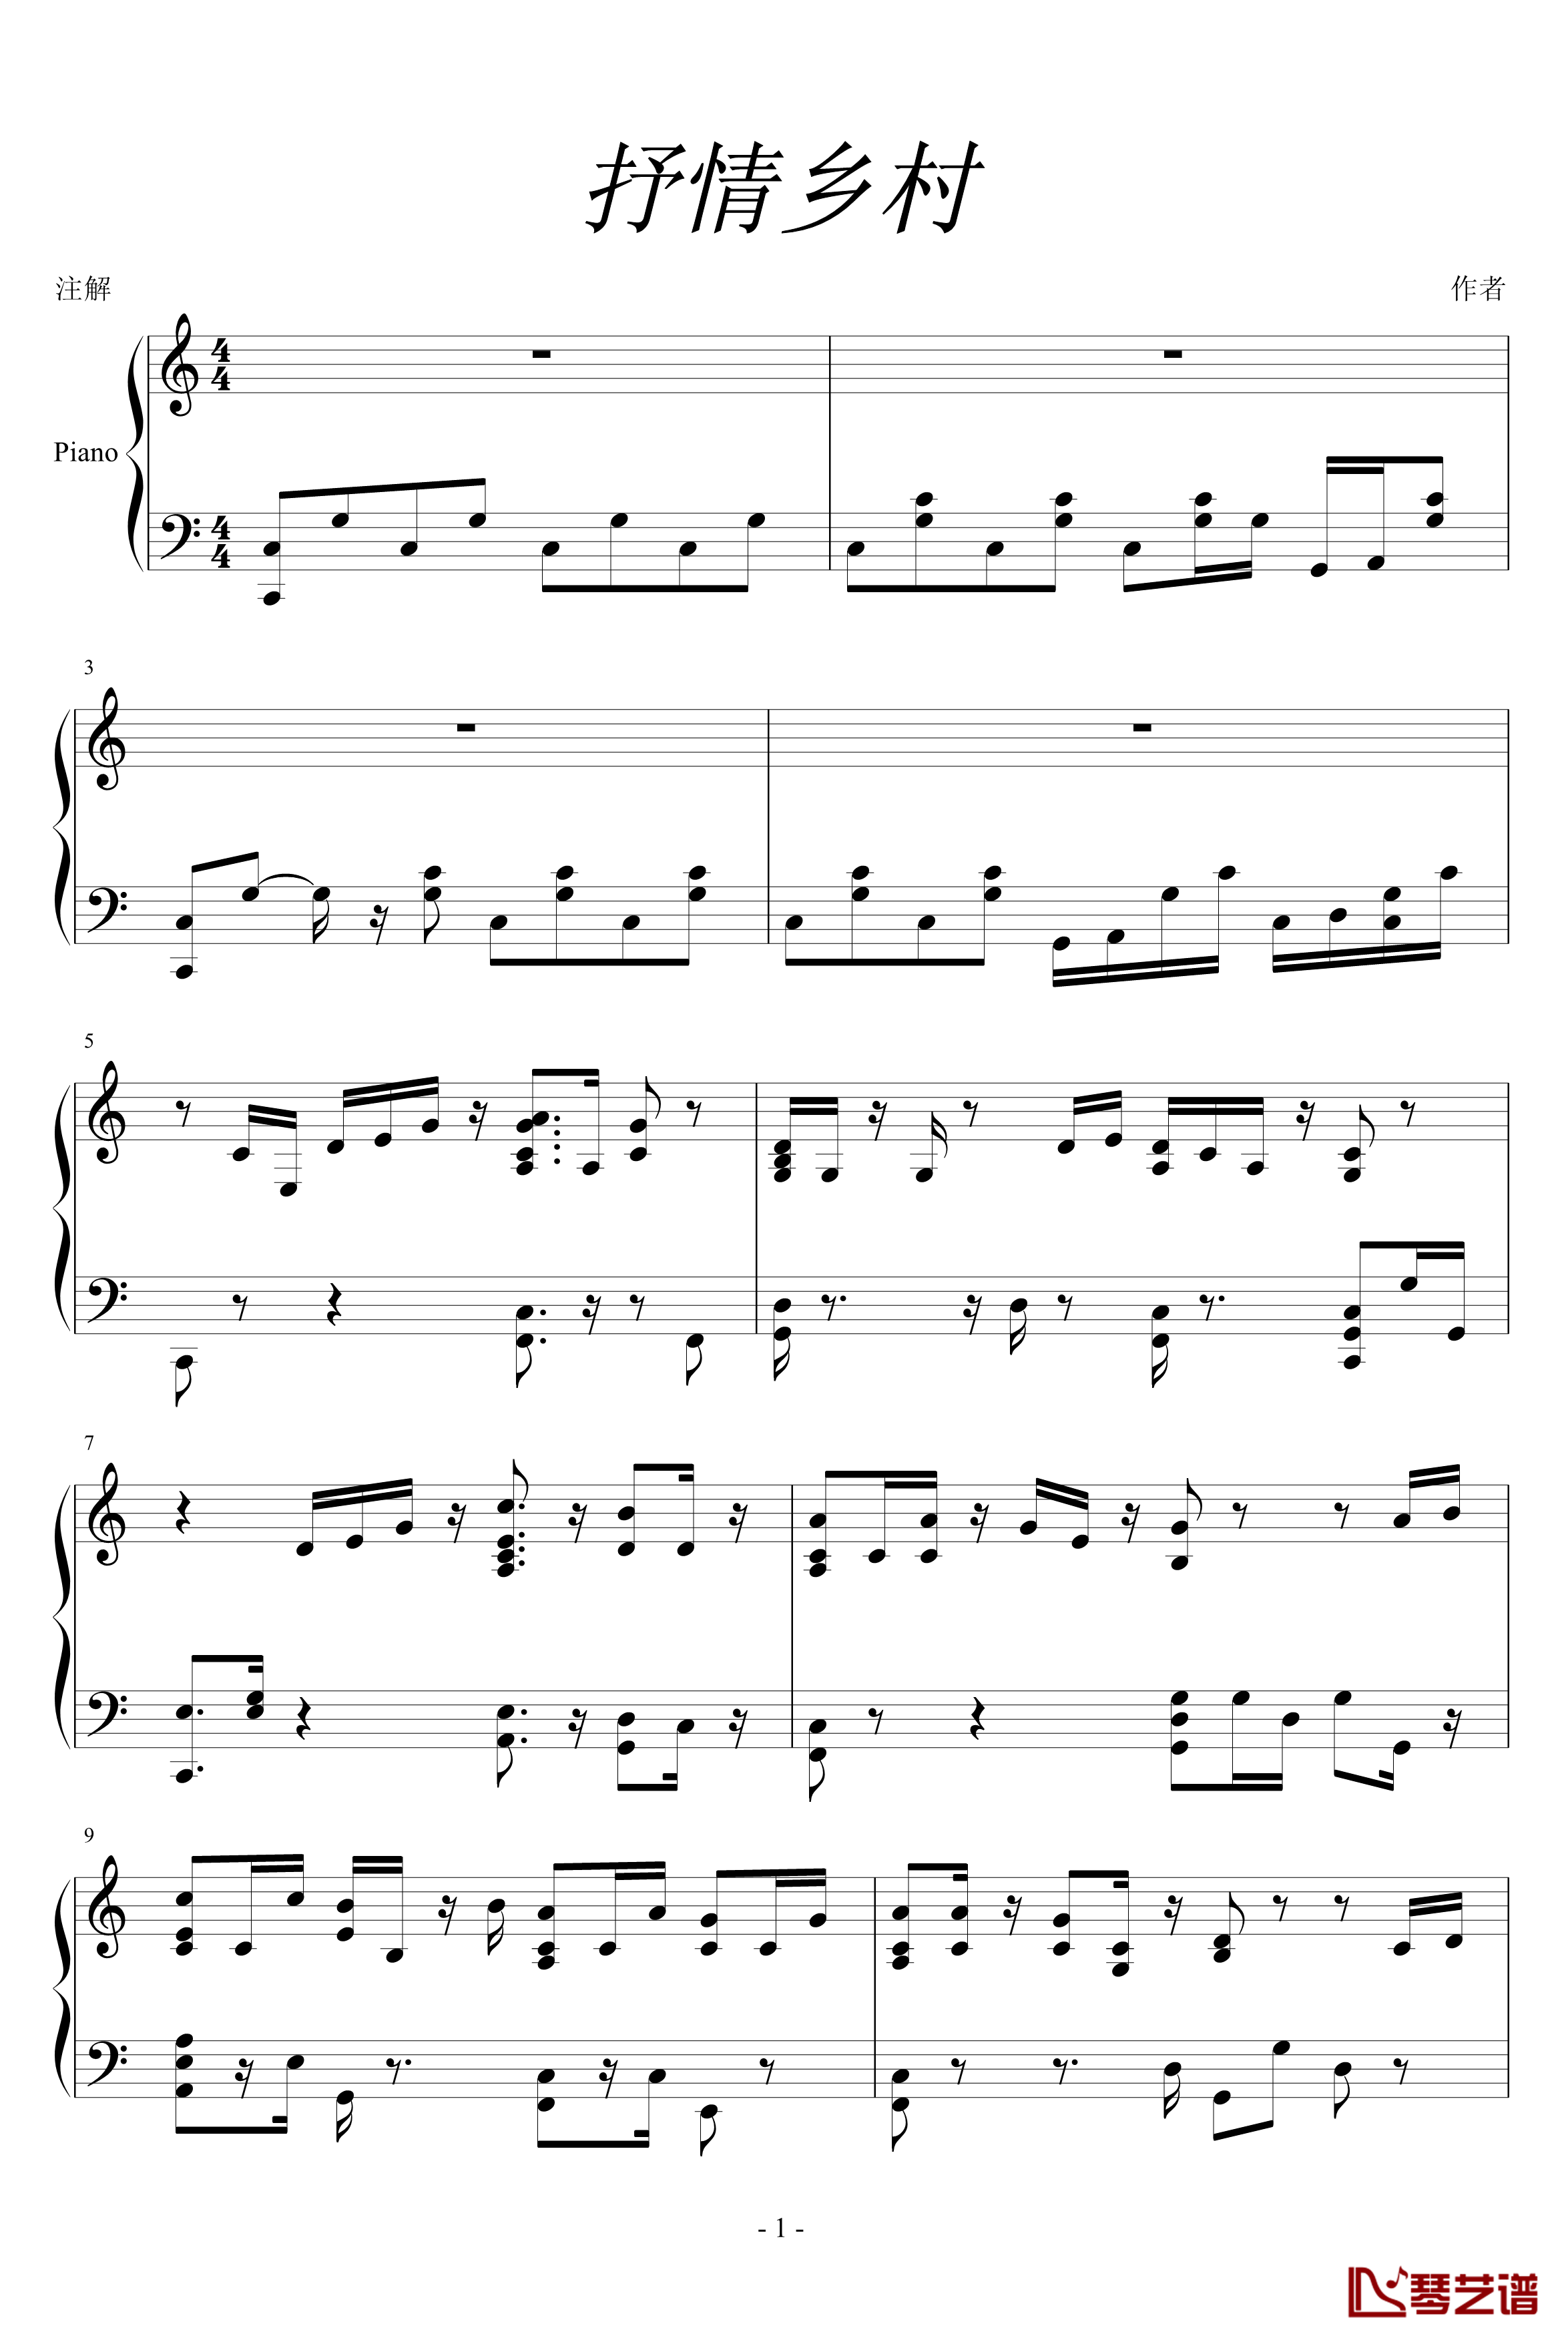 乡村抒情歌曲钢琴谱-未知分类1